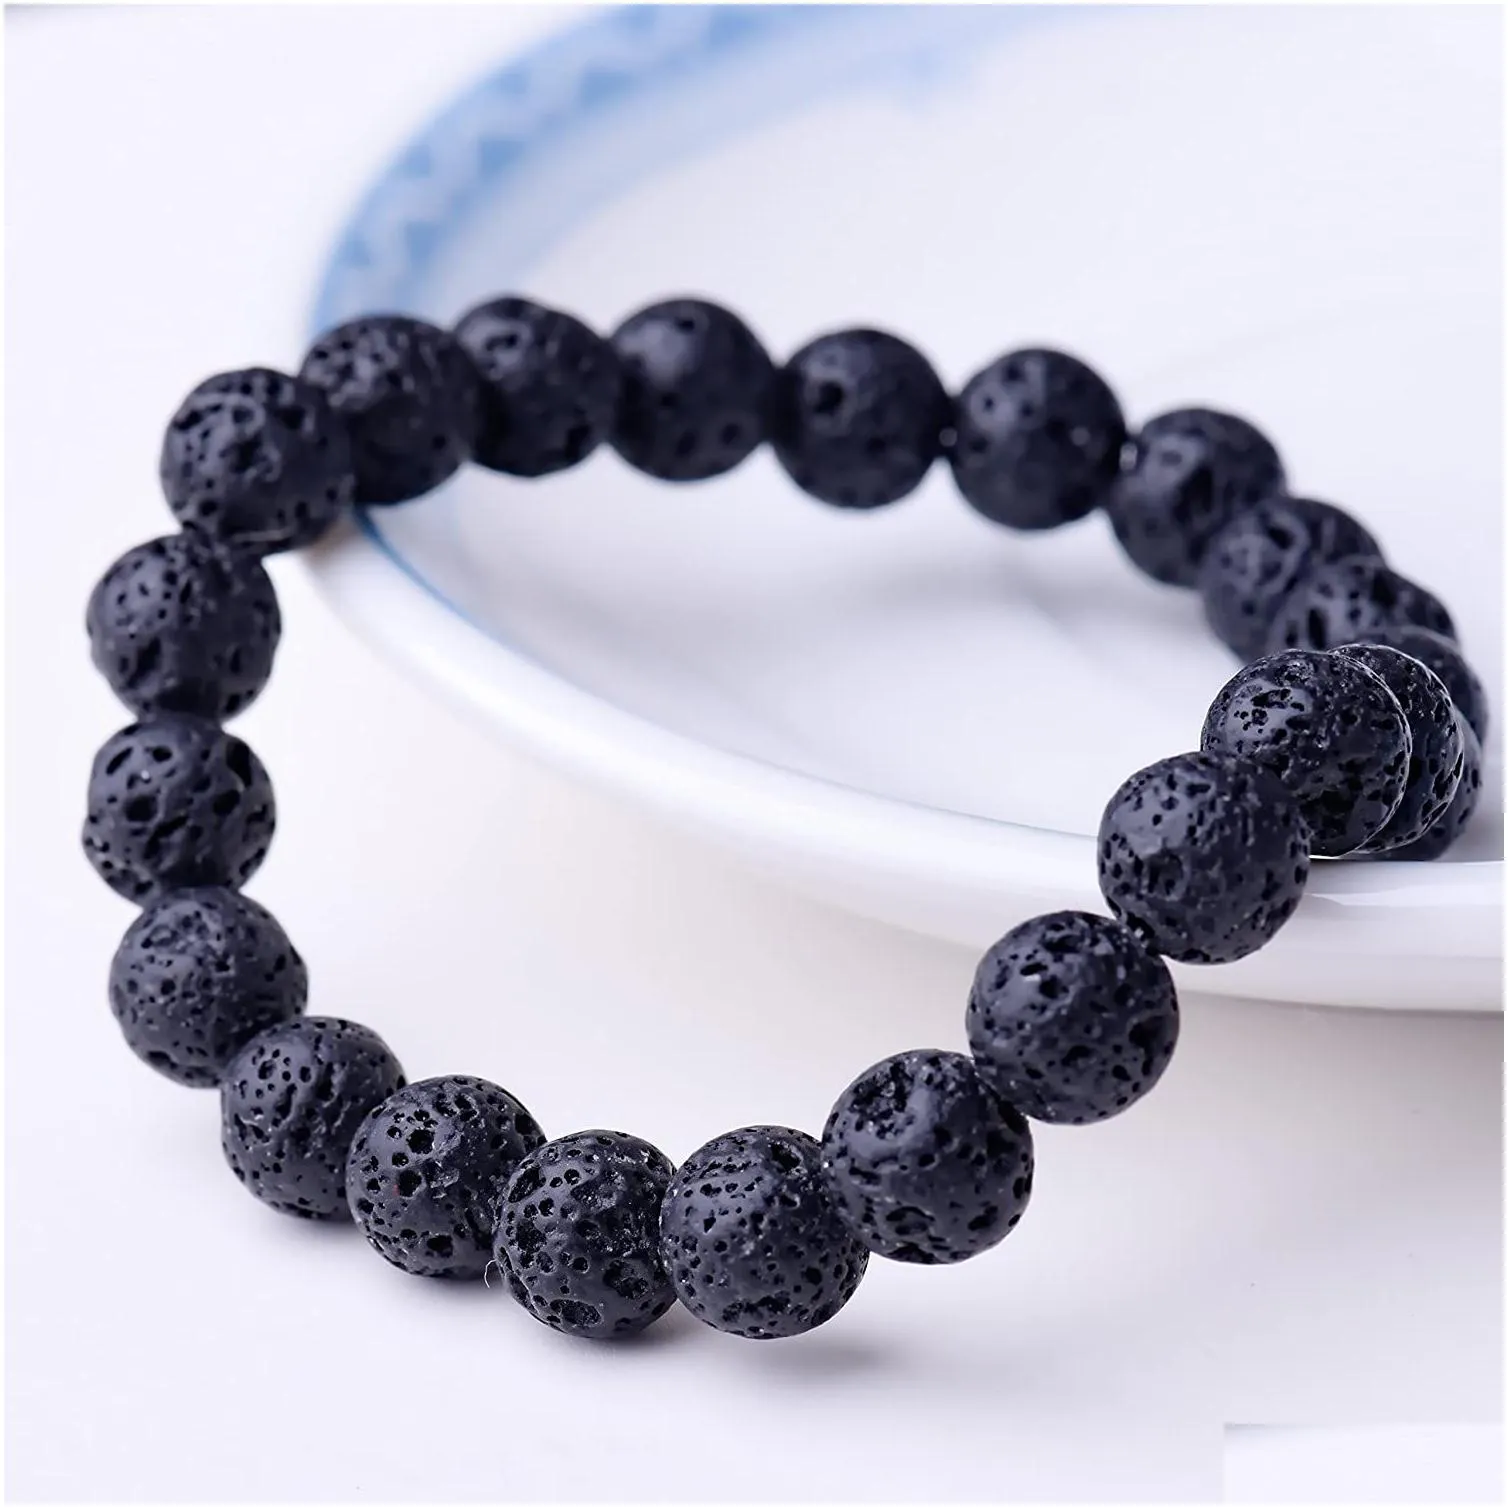 8mm strand unisex natural stone round beads bracelet fashion classic elastic malachite turquoise crystal bangle bracelets handmade chakra